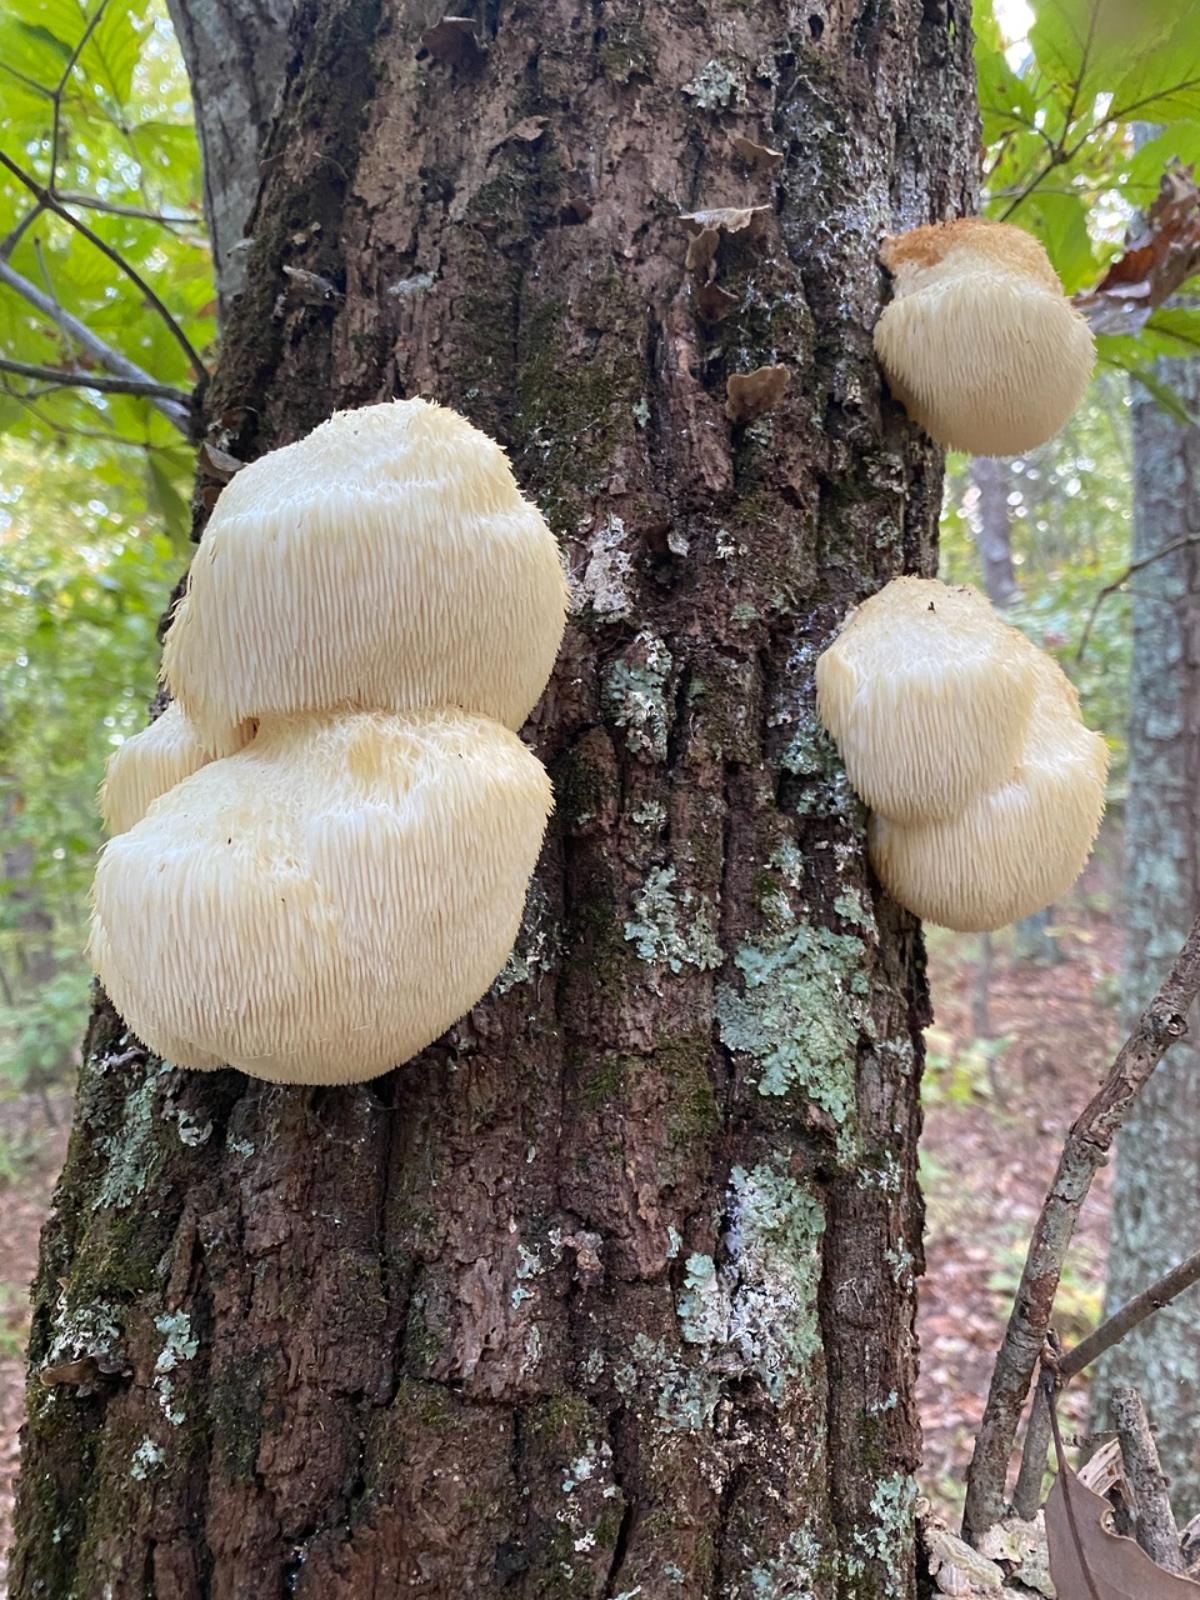 Lion's mane mushroom growing on a tree
